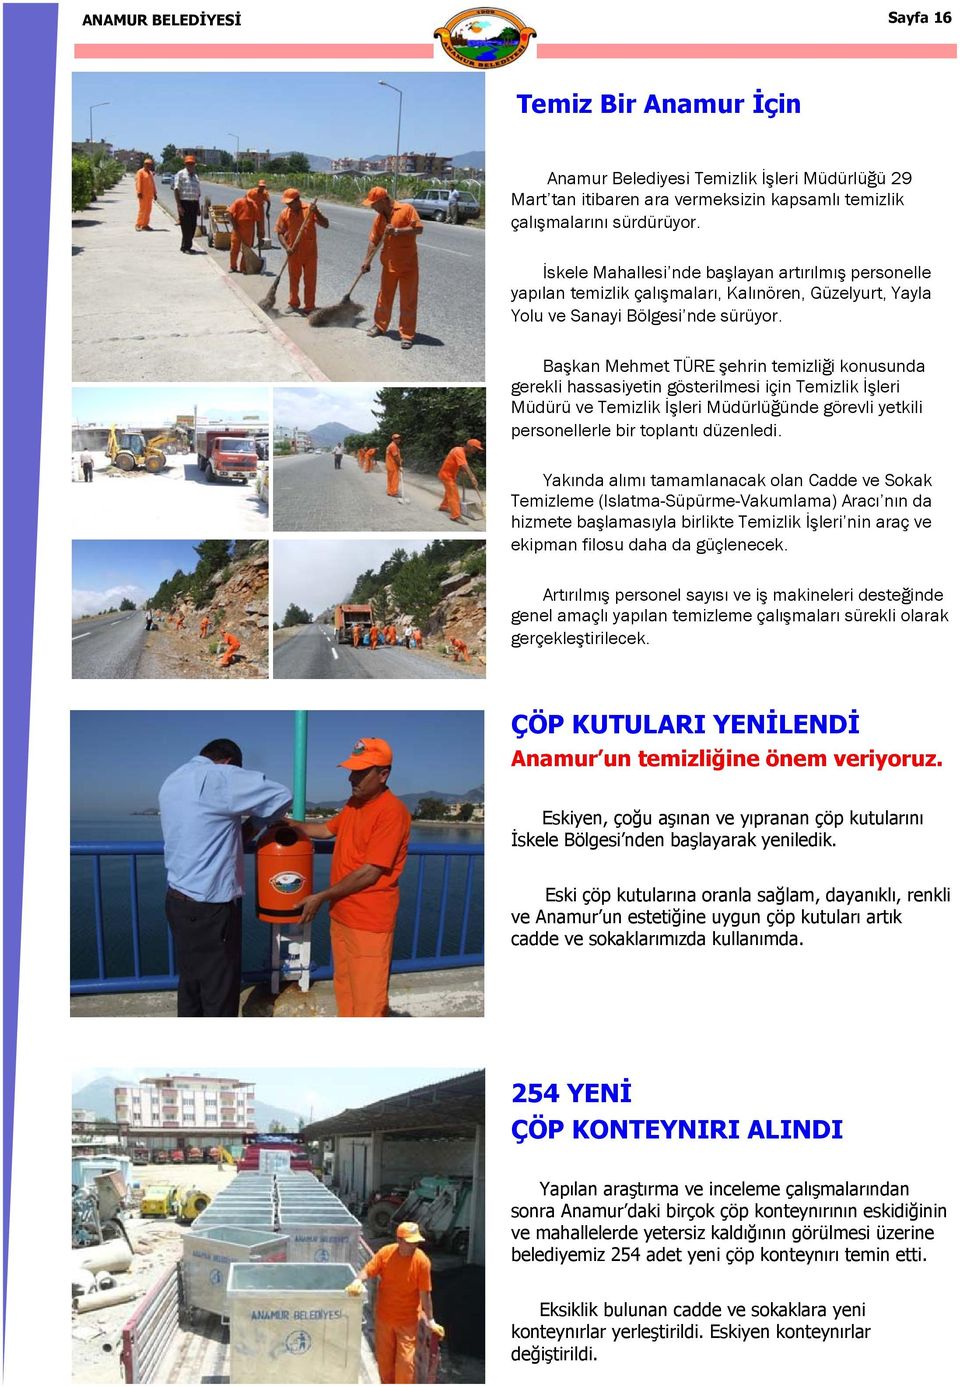 Başkan Mehmet TÜRE şehrin temizliği konusunda gerekli hassasiyetin gösterilmesi için Temizlik İşleri Müdürü ve Temizlik İşleri Müdürlüğünde görevli yetkili personellerle bir toplantı düzenledi.